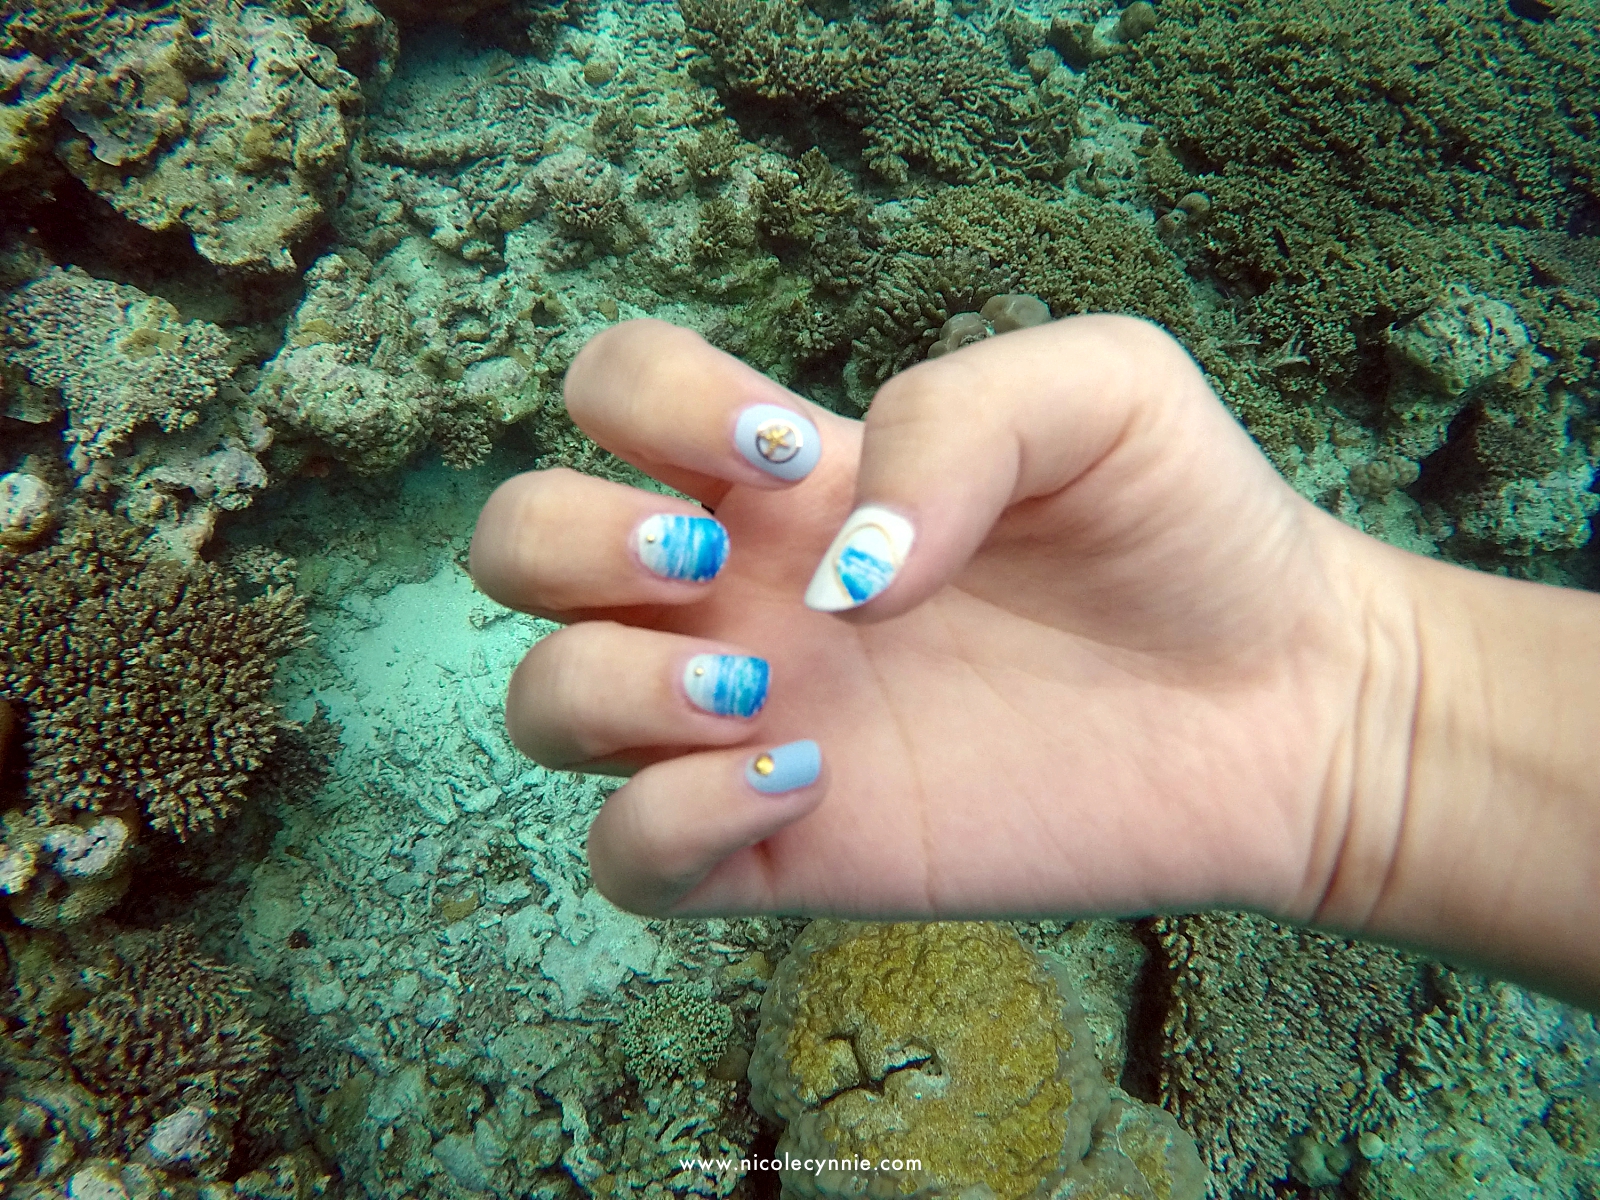 Nicole Cynnie | Surfing @ Turtle Reef, Maldives 3